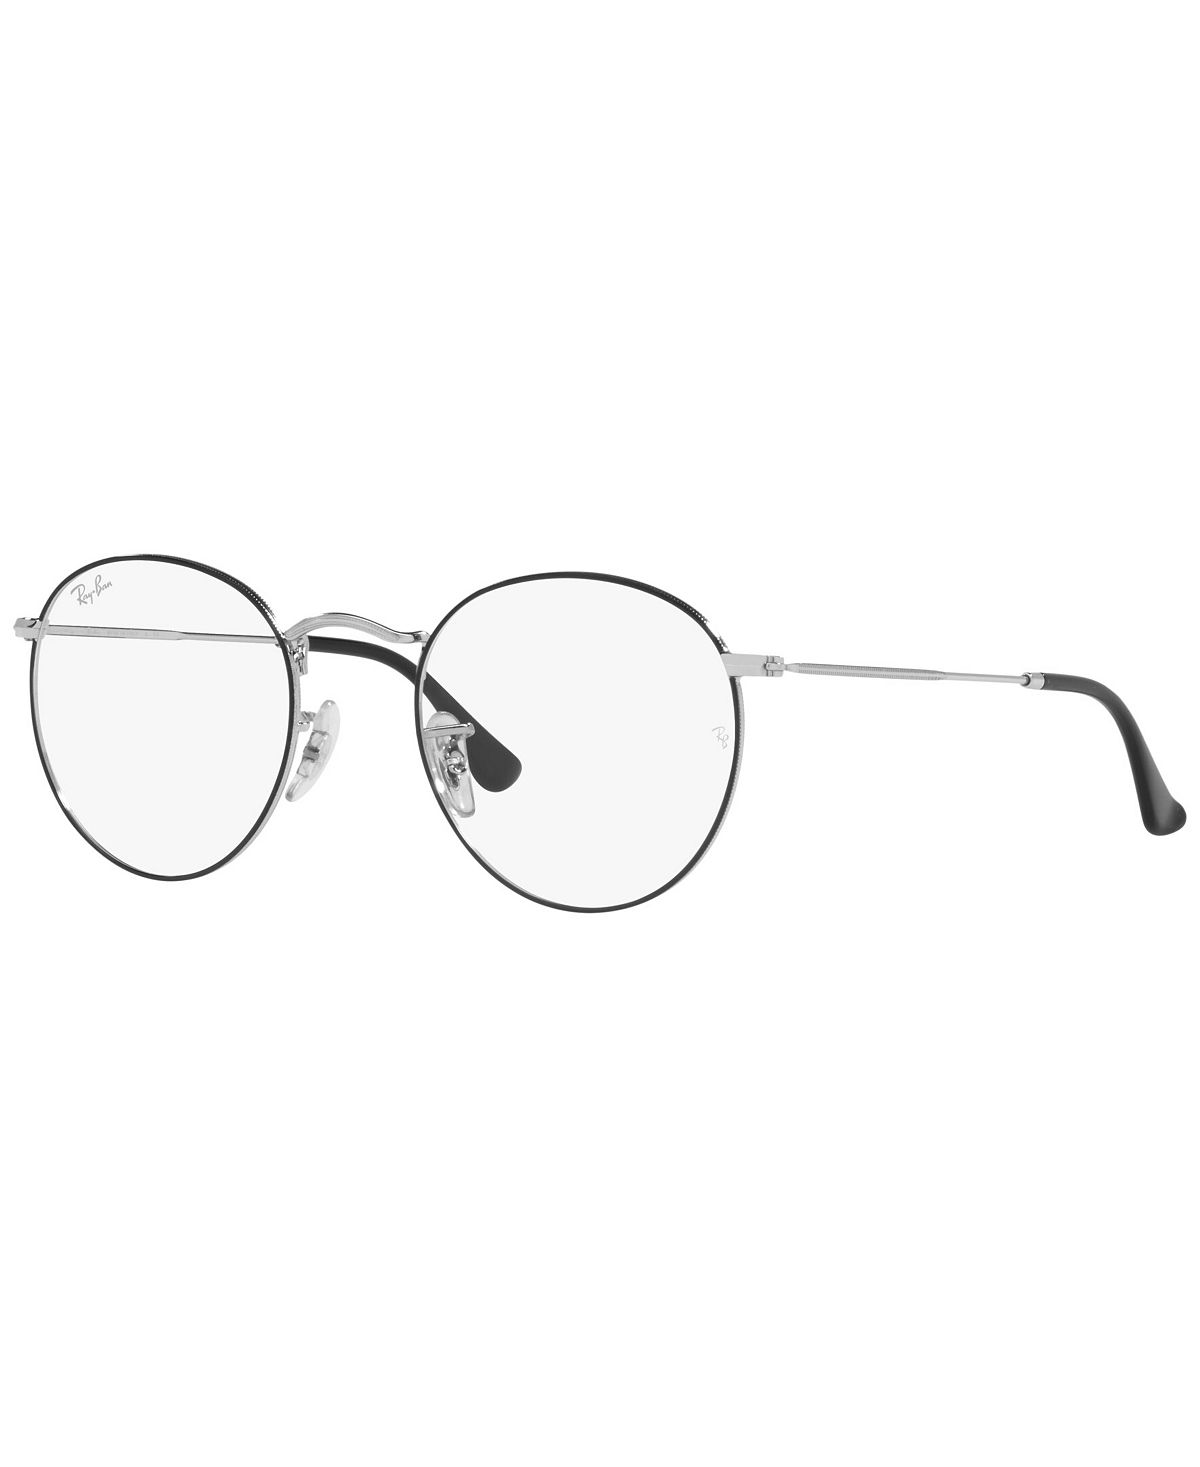 RB3447V Круглые металлические очки унисекс, круглые очки Ray-Ban